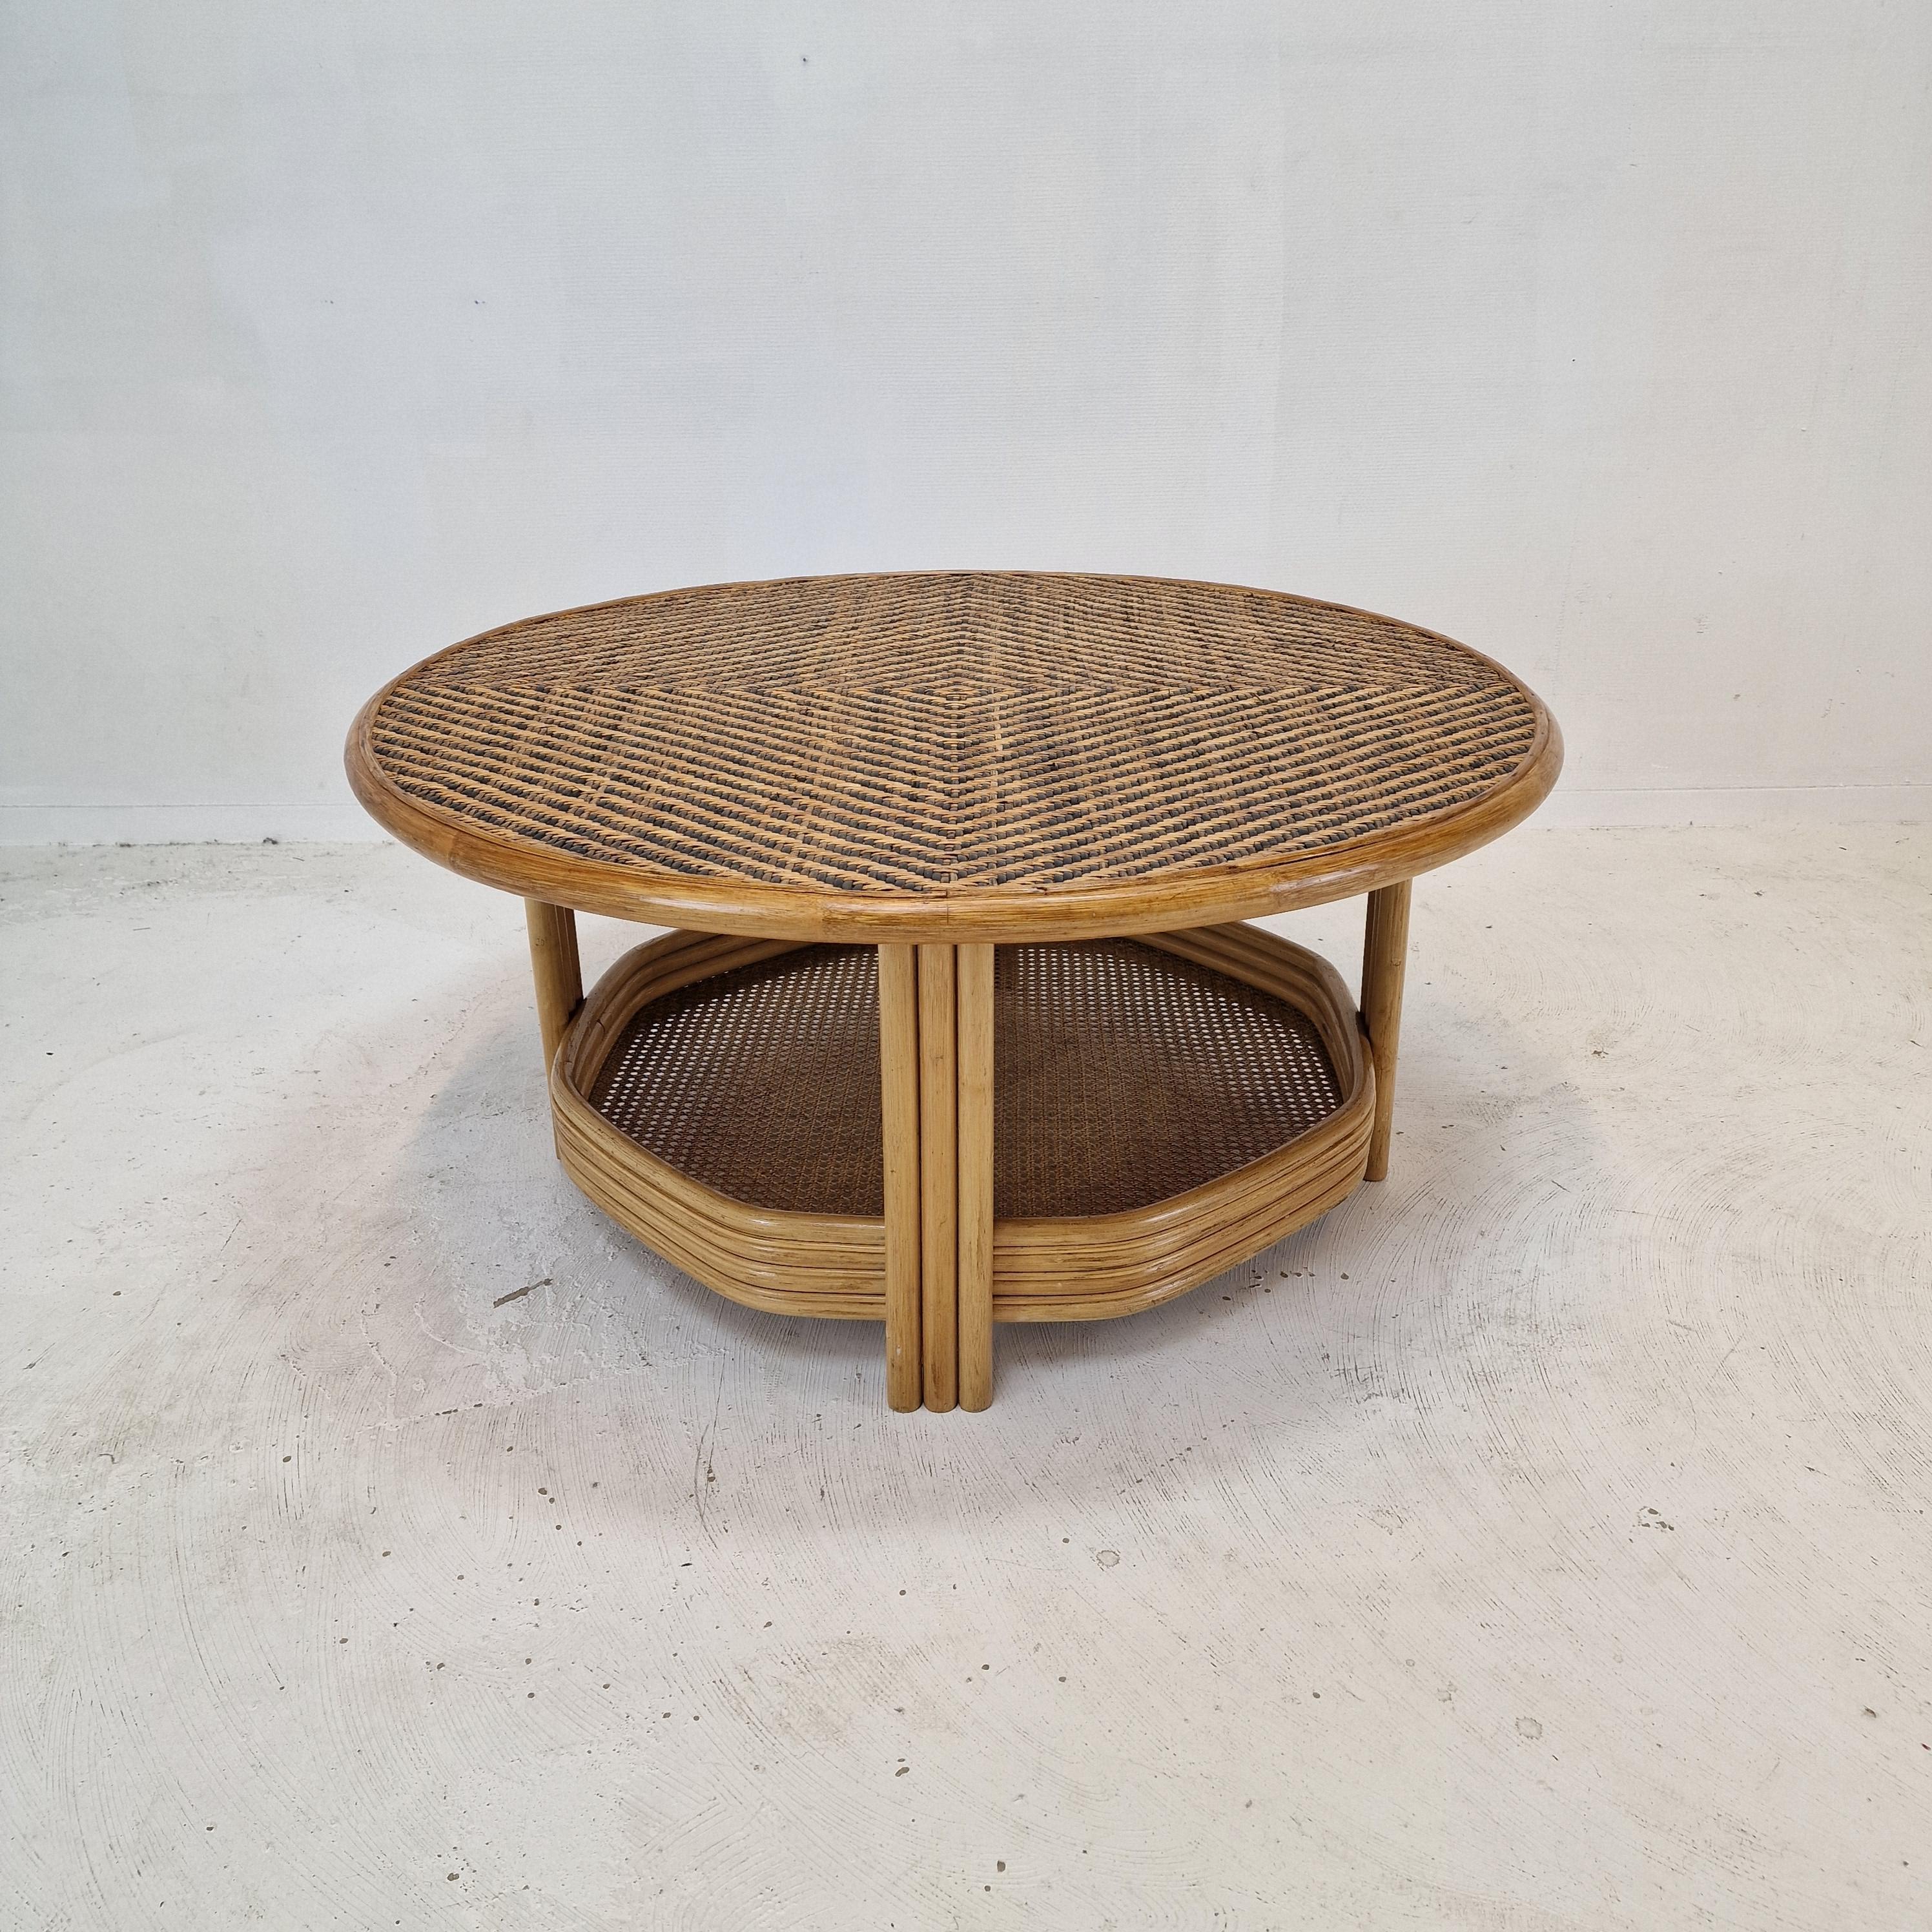 Jolie table ronde de salon ou d'appoint, fabriquée en Italie dans les années 70. 

La base est en bambou.
Les assiettes sont en rotin et en osier.

Il est possible de retirer la plaque supérieure pour l'utiliser comme un plateau.

Cette table unique